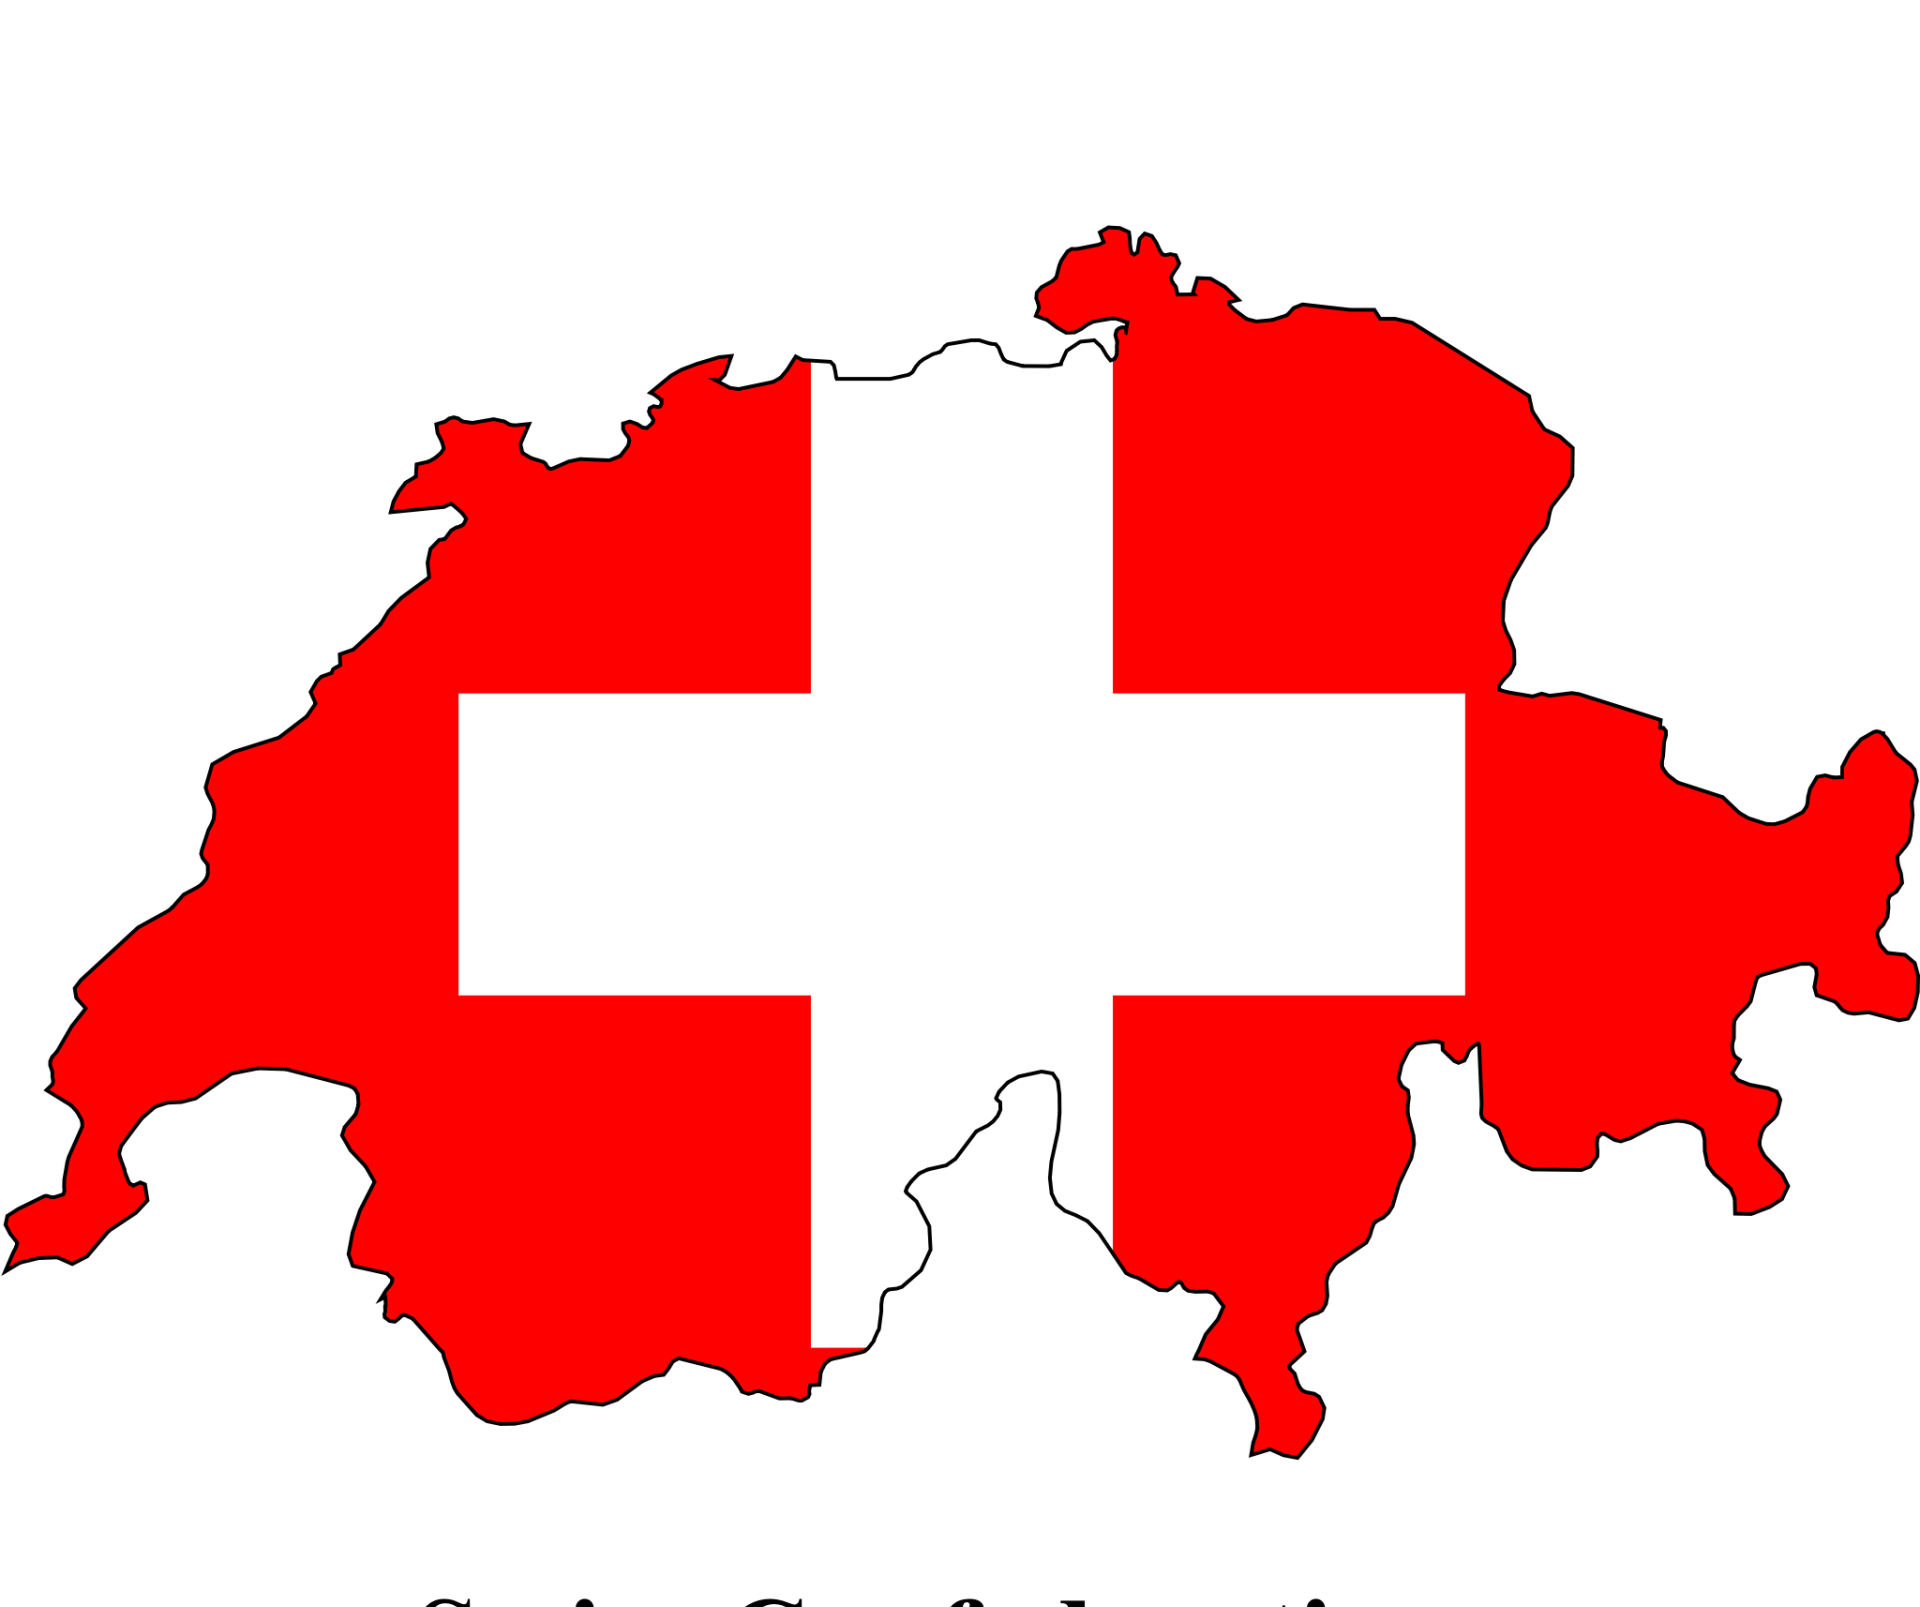 Mappa dello stato Svizzera con i colori della bandiera Svizzera